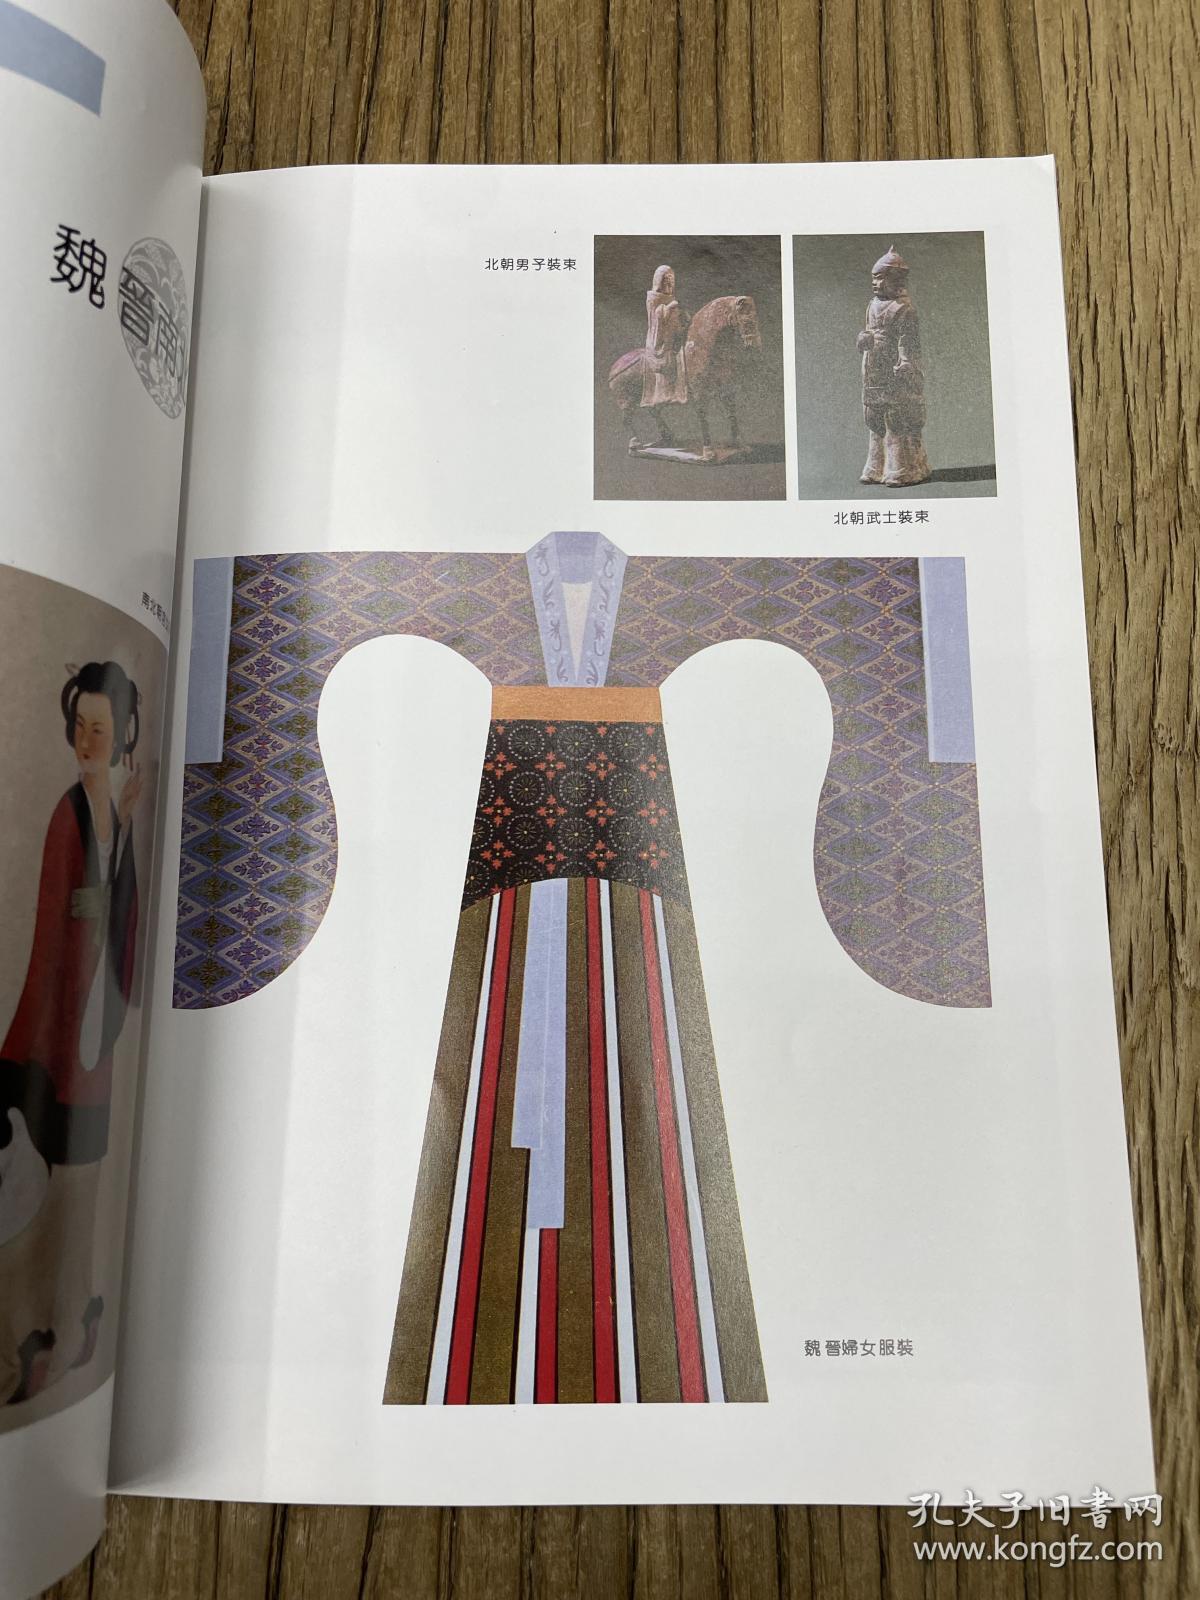 中国五千年服饰展